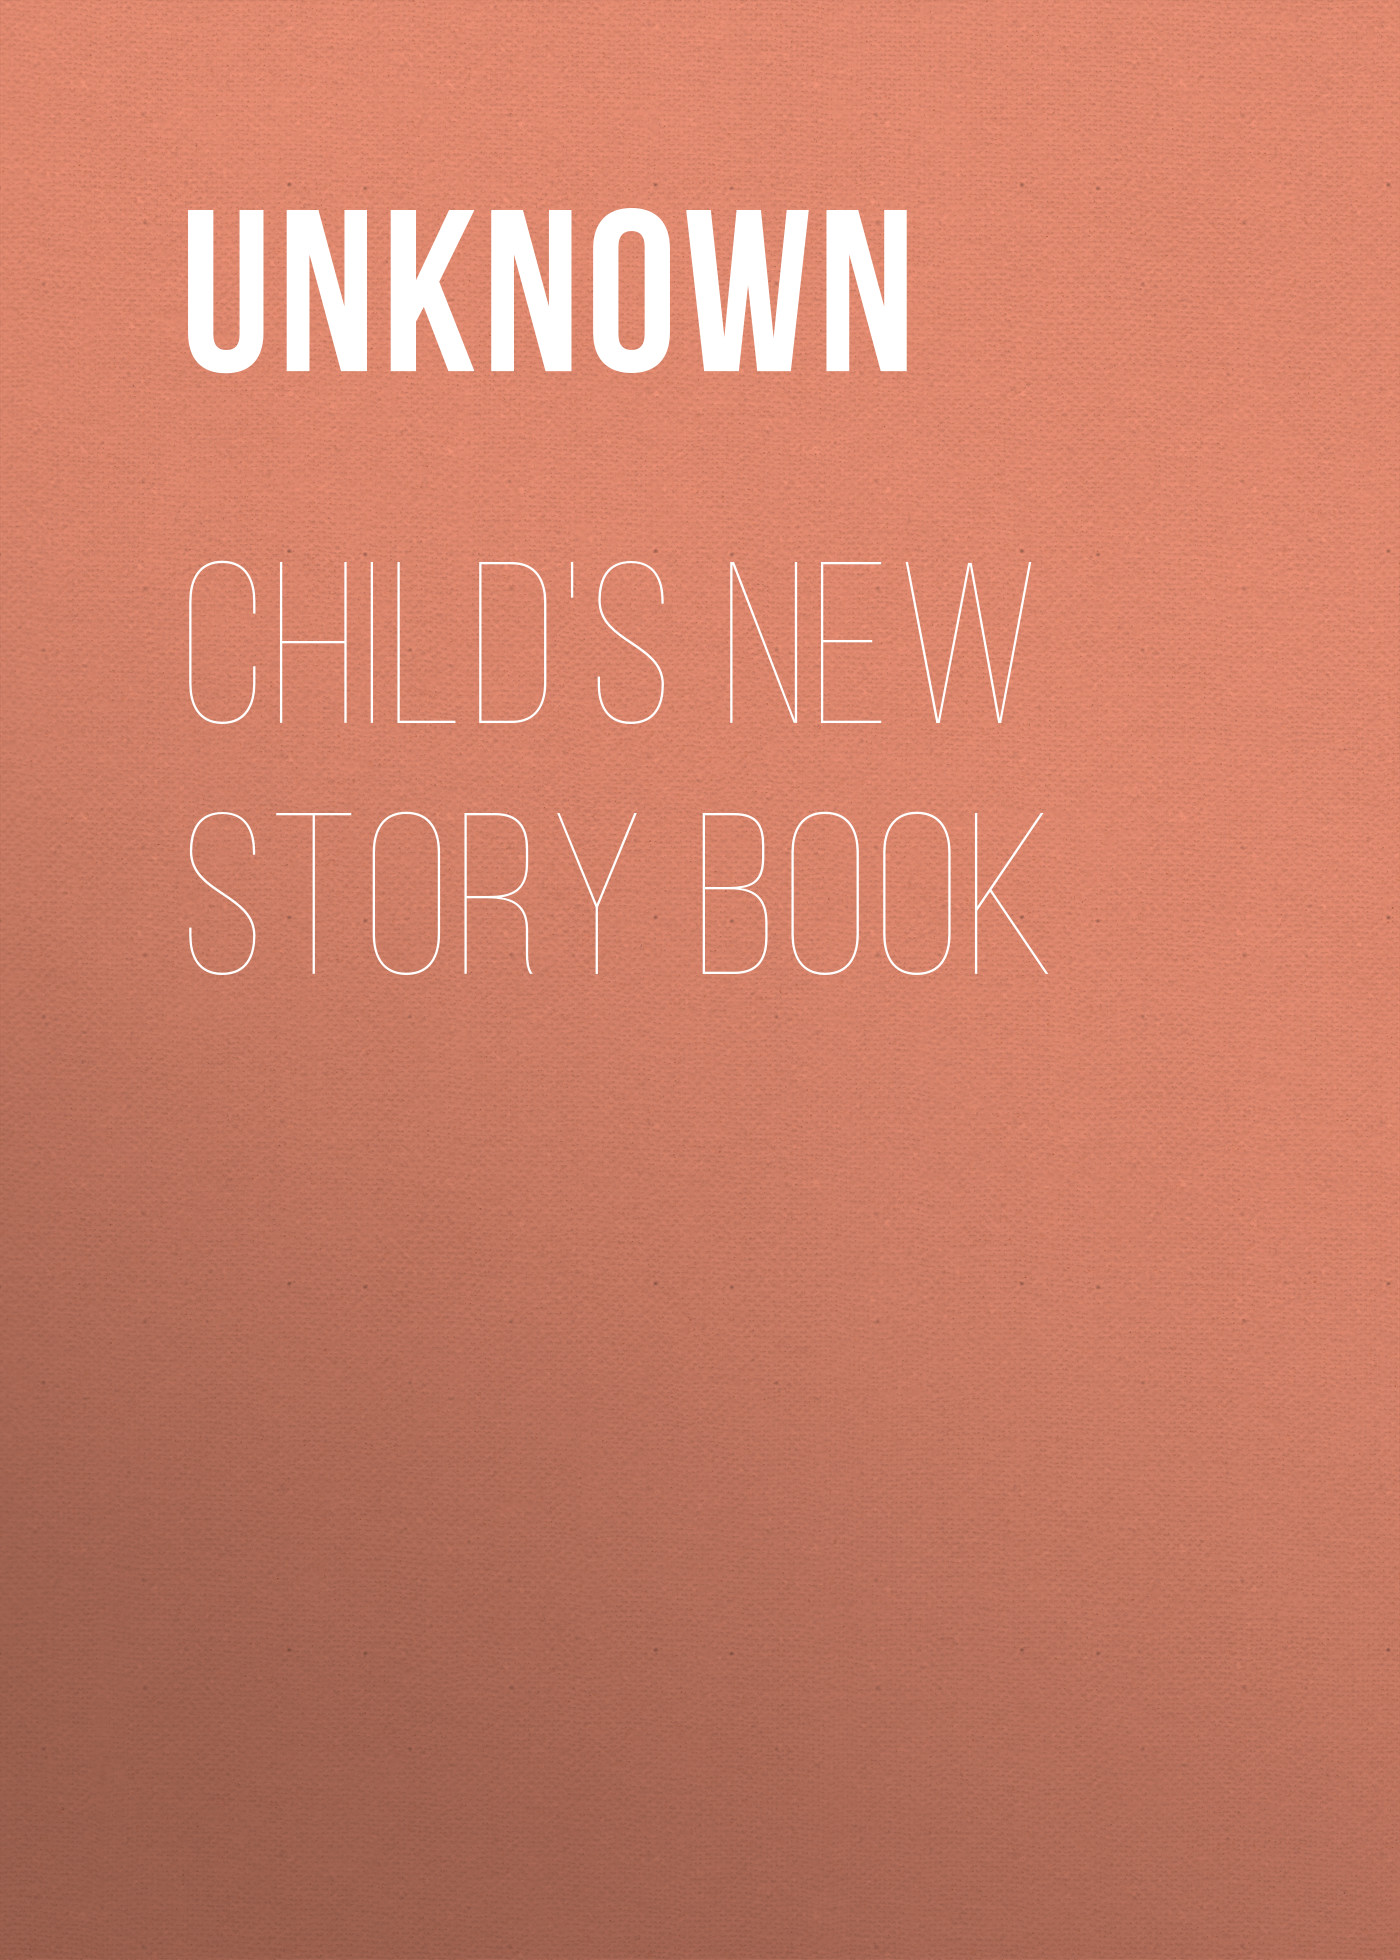 Книга Child's New Story Book из серии , созданная Unknown Unknown, может относится к жанру Сказки, Зарубежная старинная литература, Зарубежная классика, Зарубежные детские книги. Стоимость электронной книги Child's New Story Book с идентификатором 35495943 составляет 0 руб.